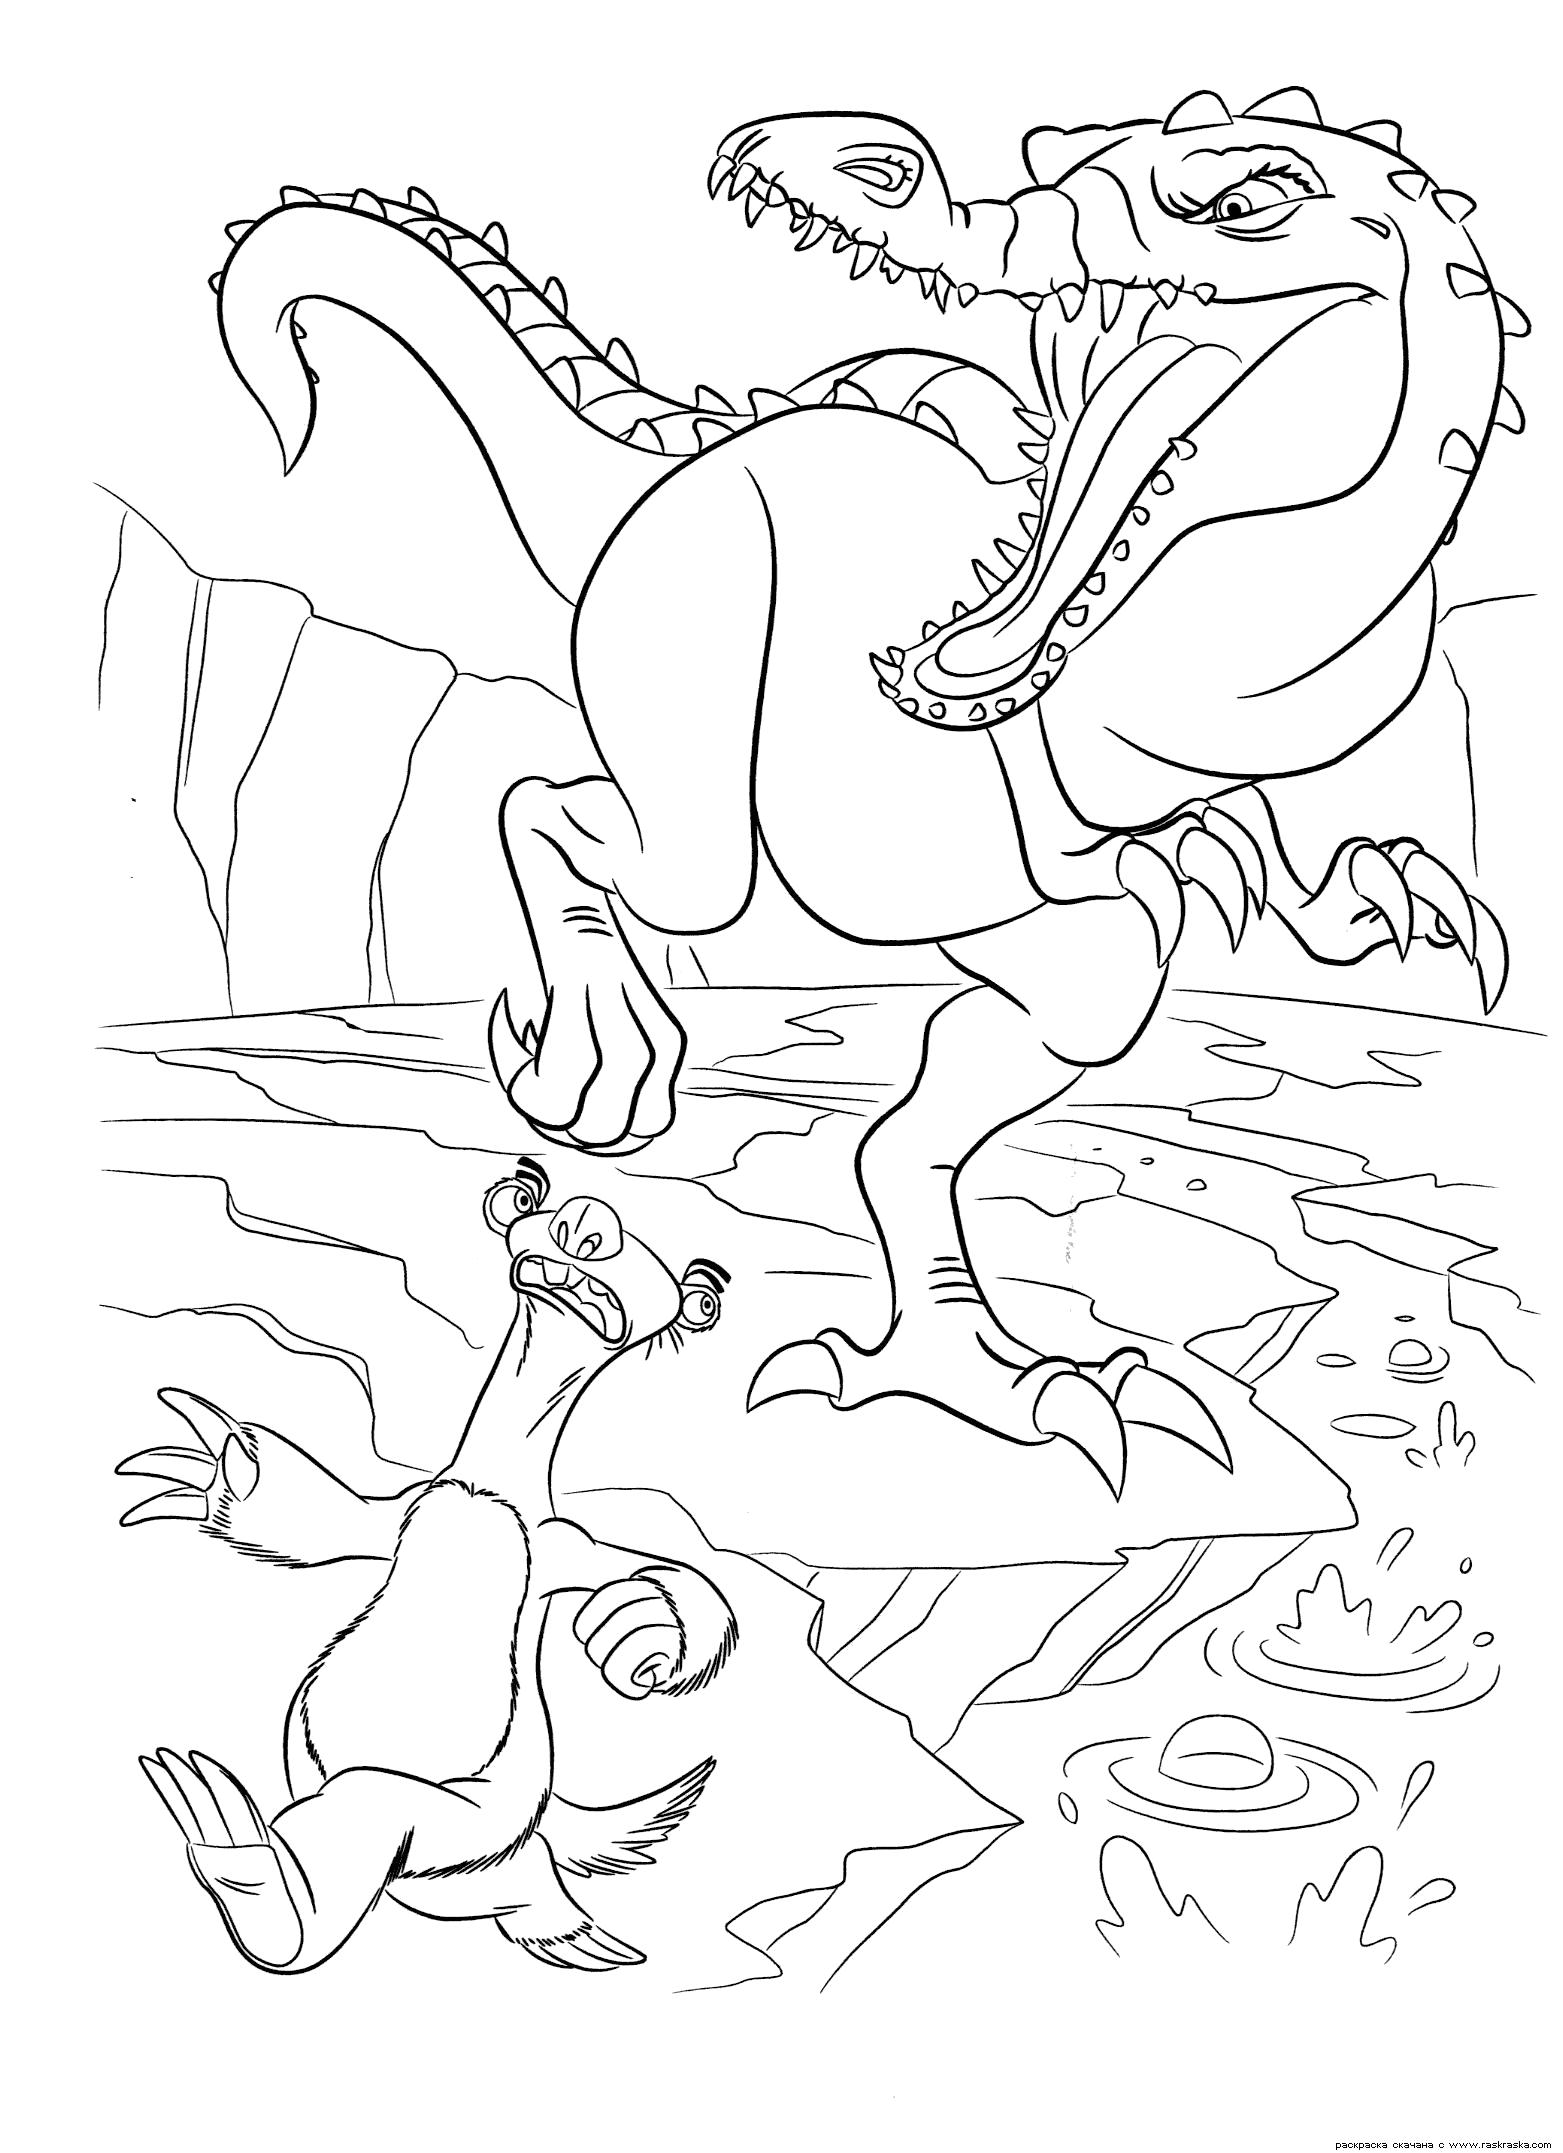 Раскраска  Руди и Сид.  Огромный динозавр из мультфильма Ледниковый период 3:Эра динозавров. Скачать бесплатно  динозавра и ленивца для ребенка картинки. Скачать динозавр.  Распечатать динозавр